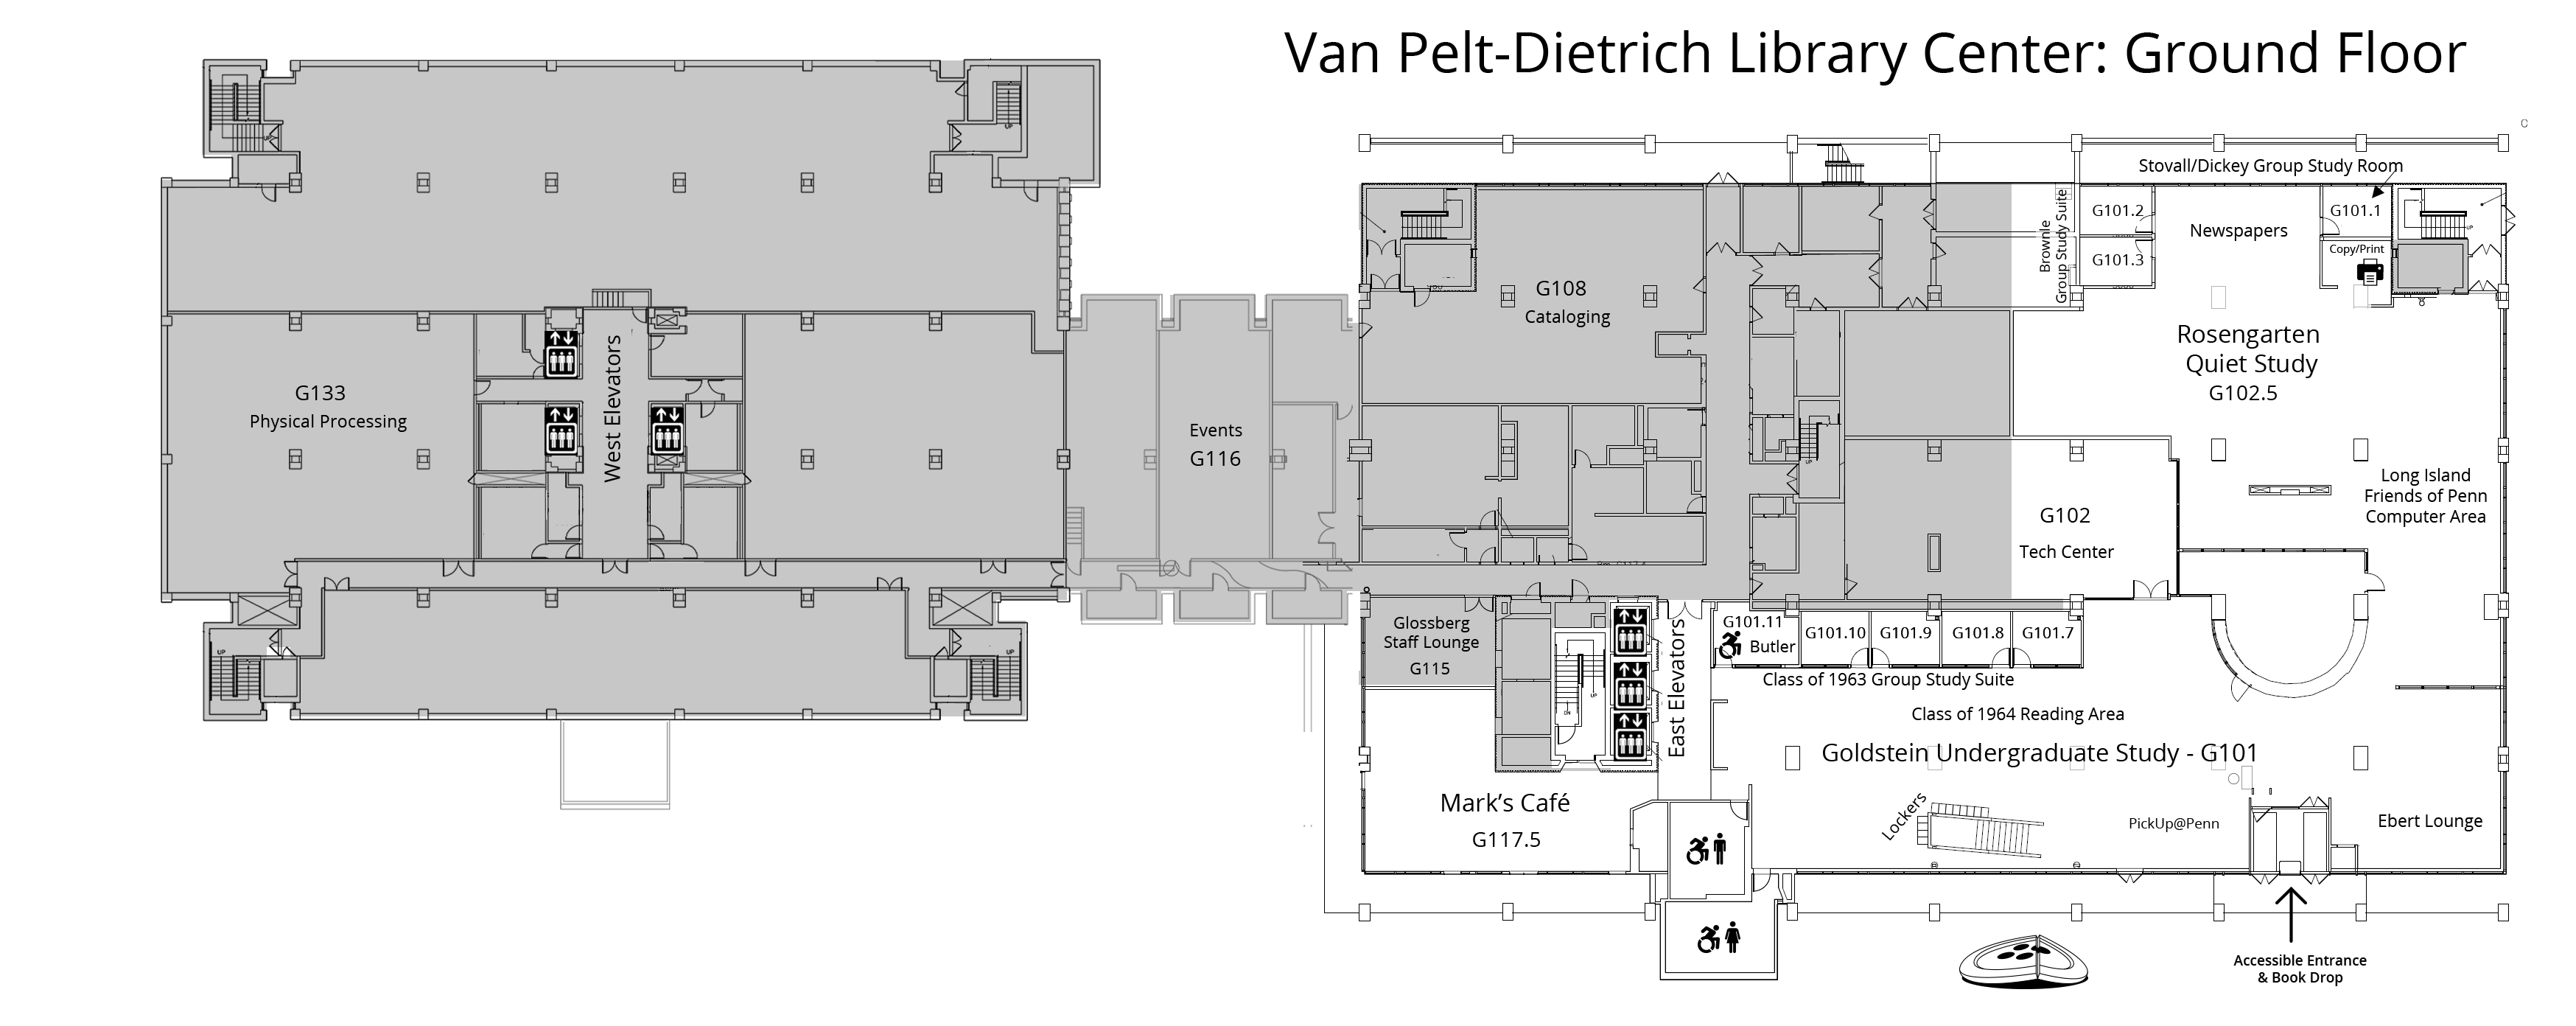 Van Pelt-Dietrich Library Center, ground floor plan